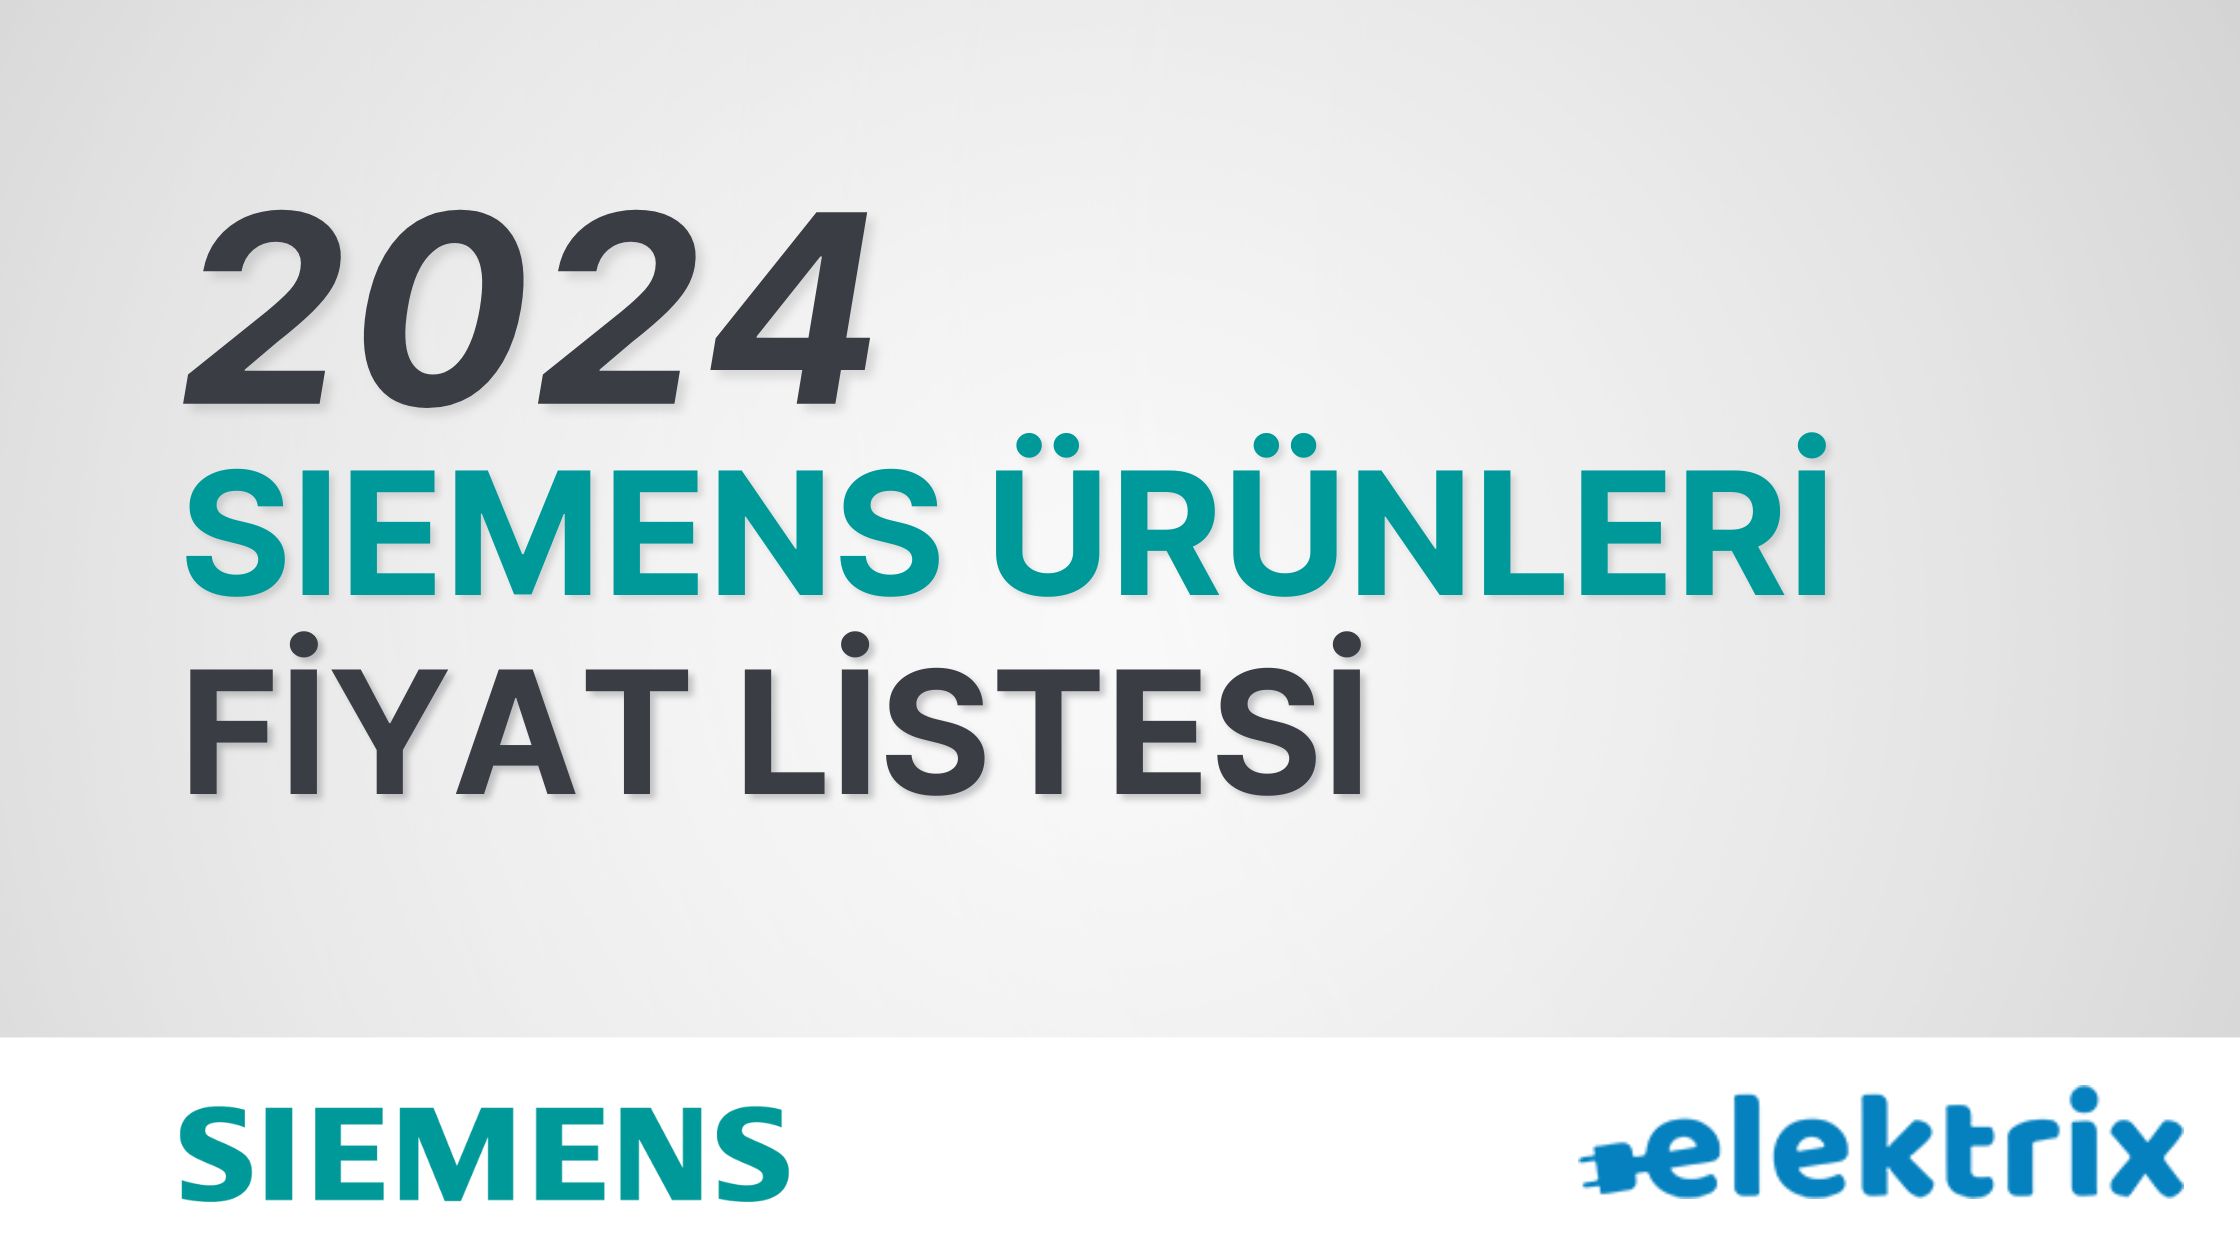 Siemens Fiyat Listesi 2022